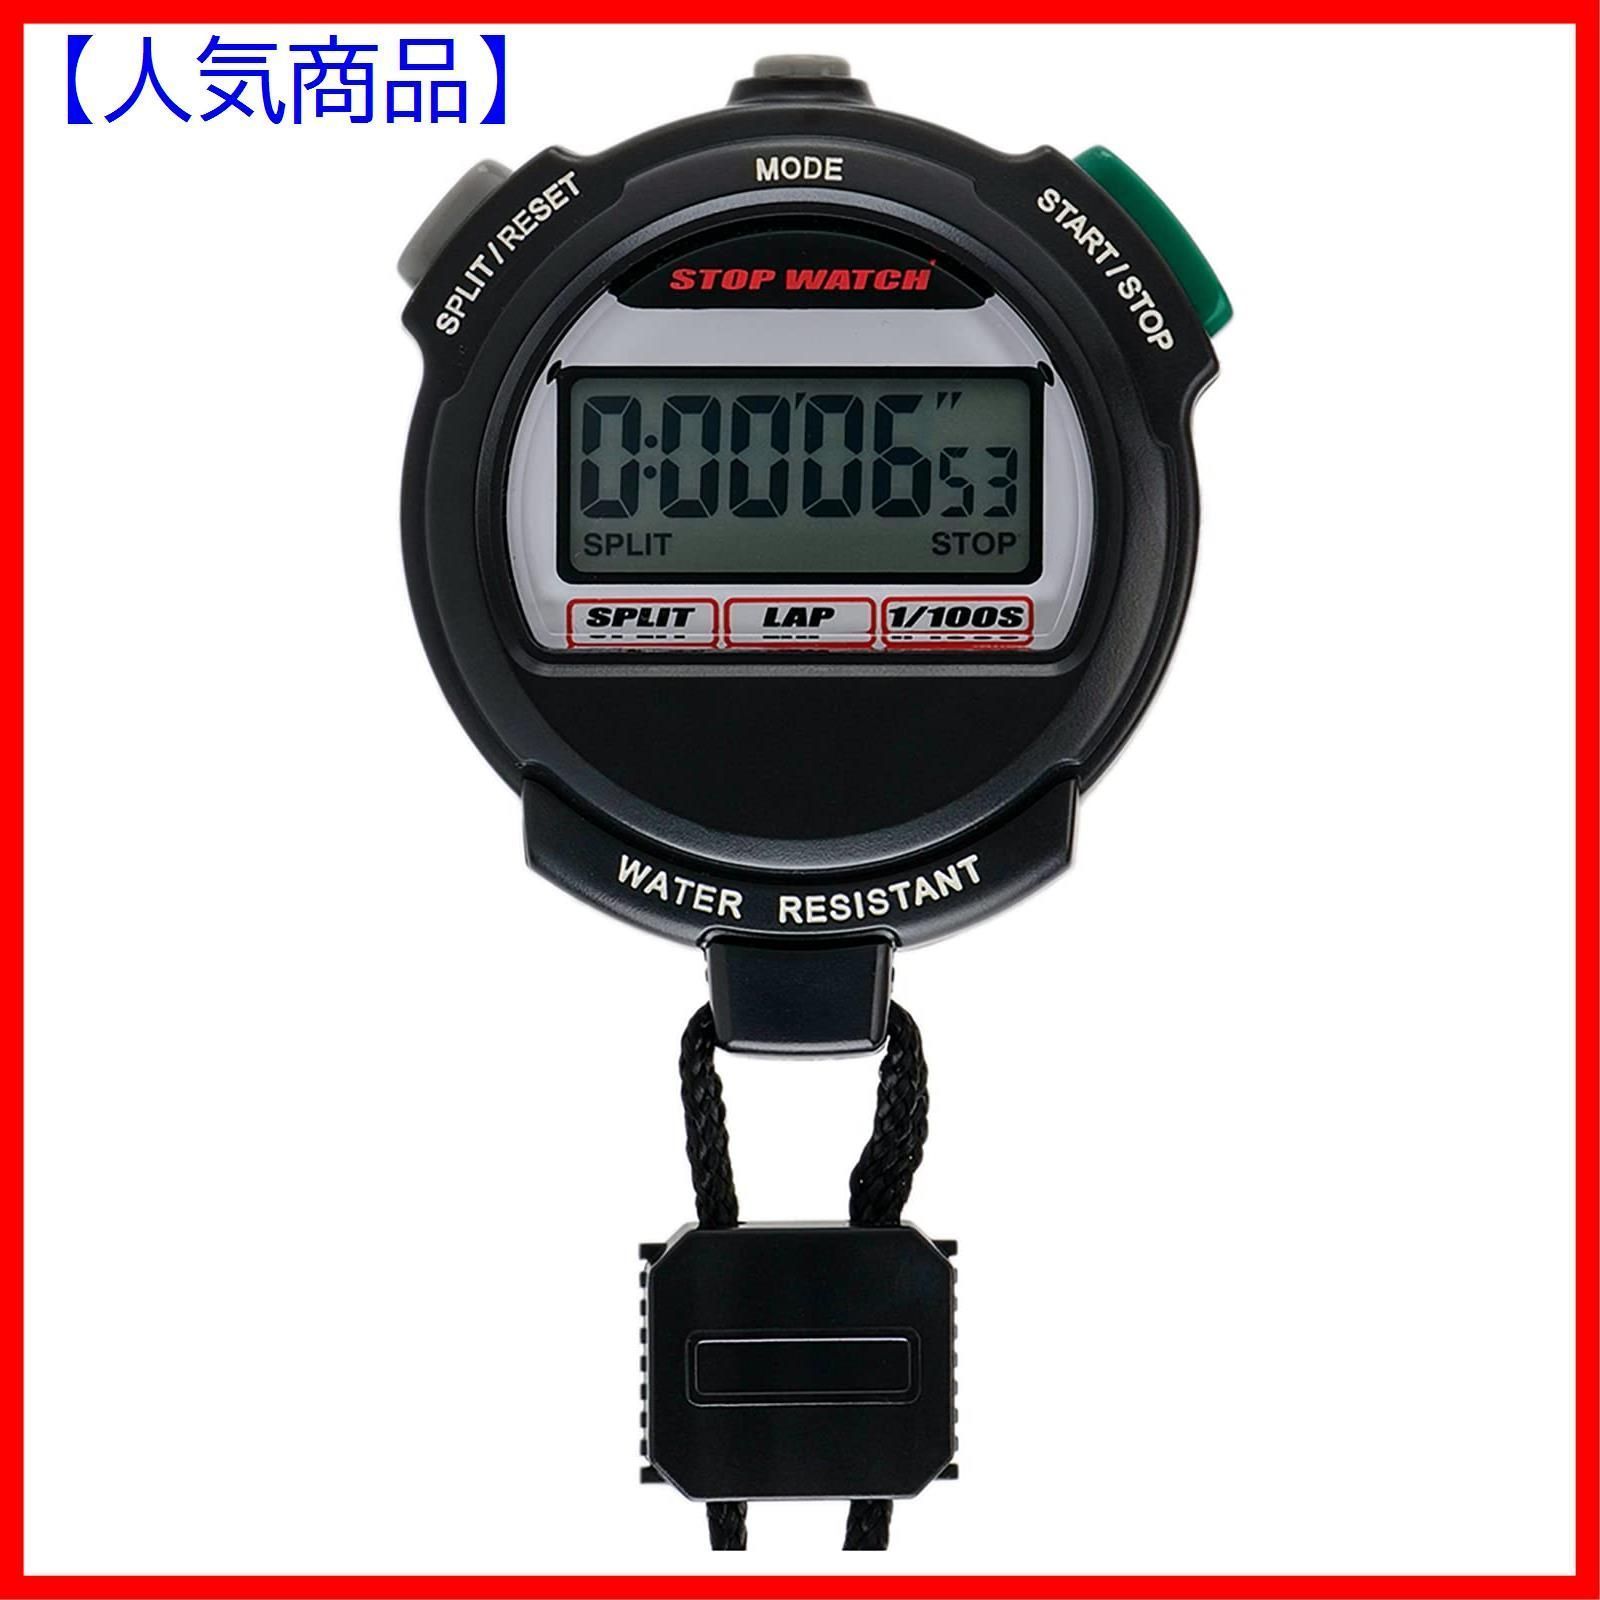 注目 HONHX 腕時計 多機能 ダイバーズウォッチ 3気圧防水 デジタル